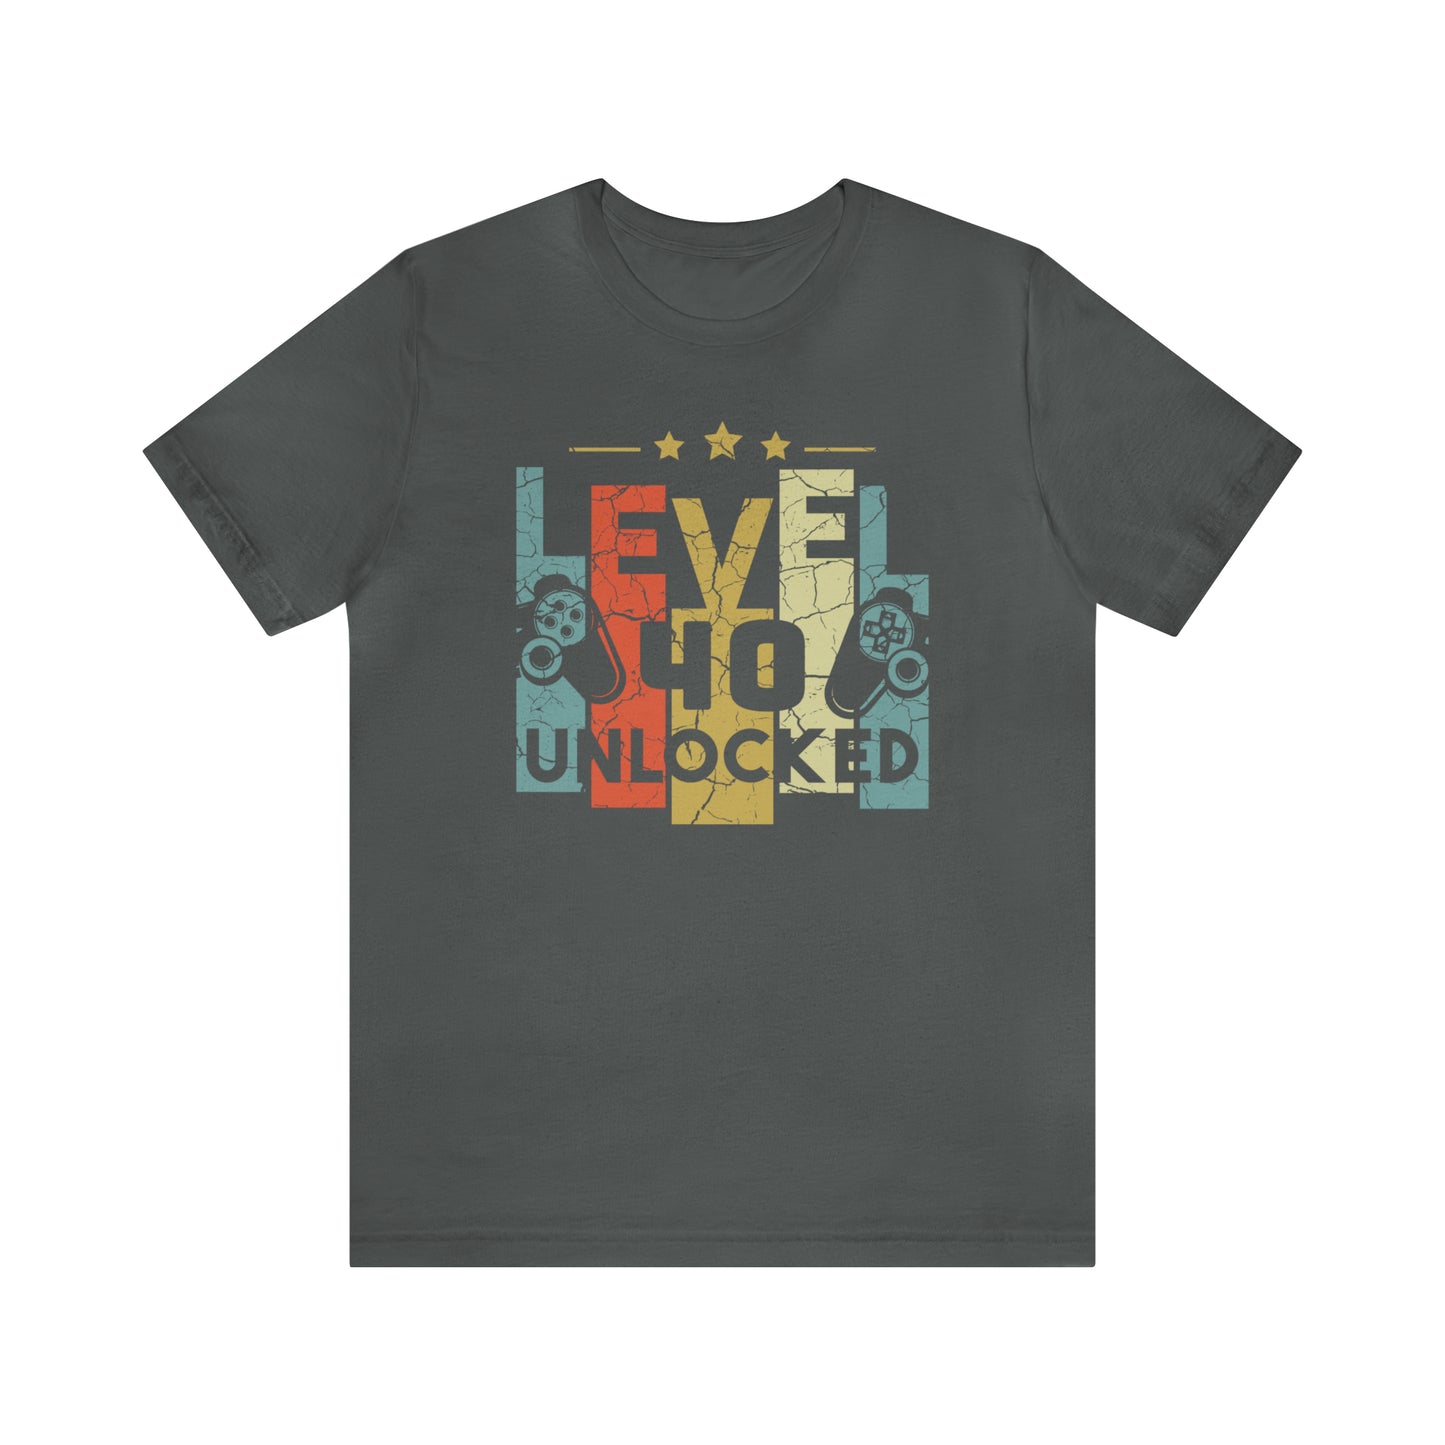 40th Birthday Gift for men or women, Level 40 Unlocked Funny Gamer Shirt for Husband